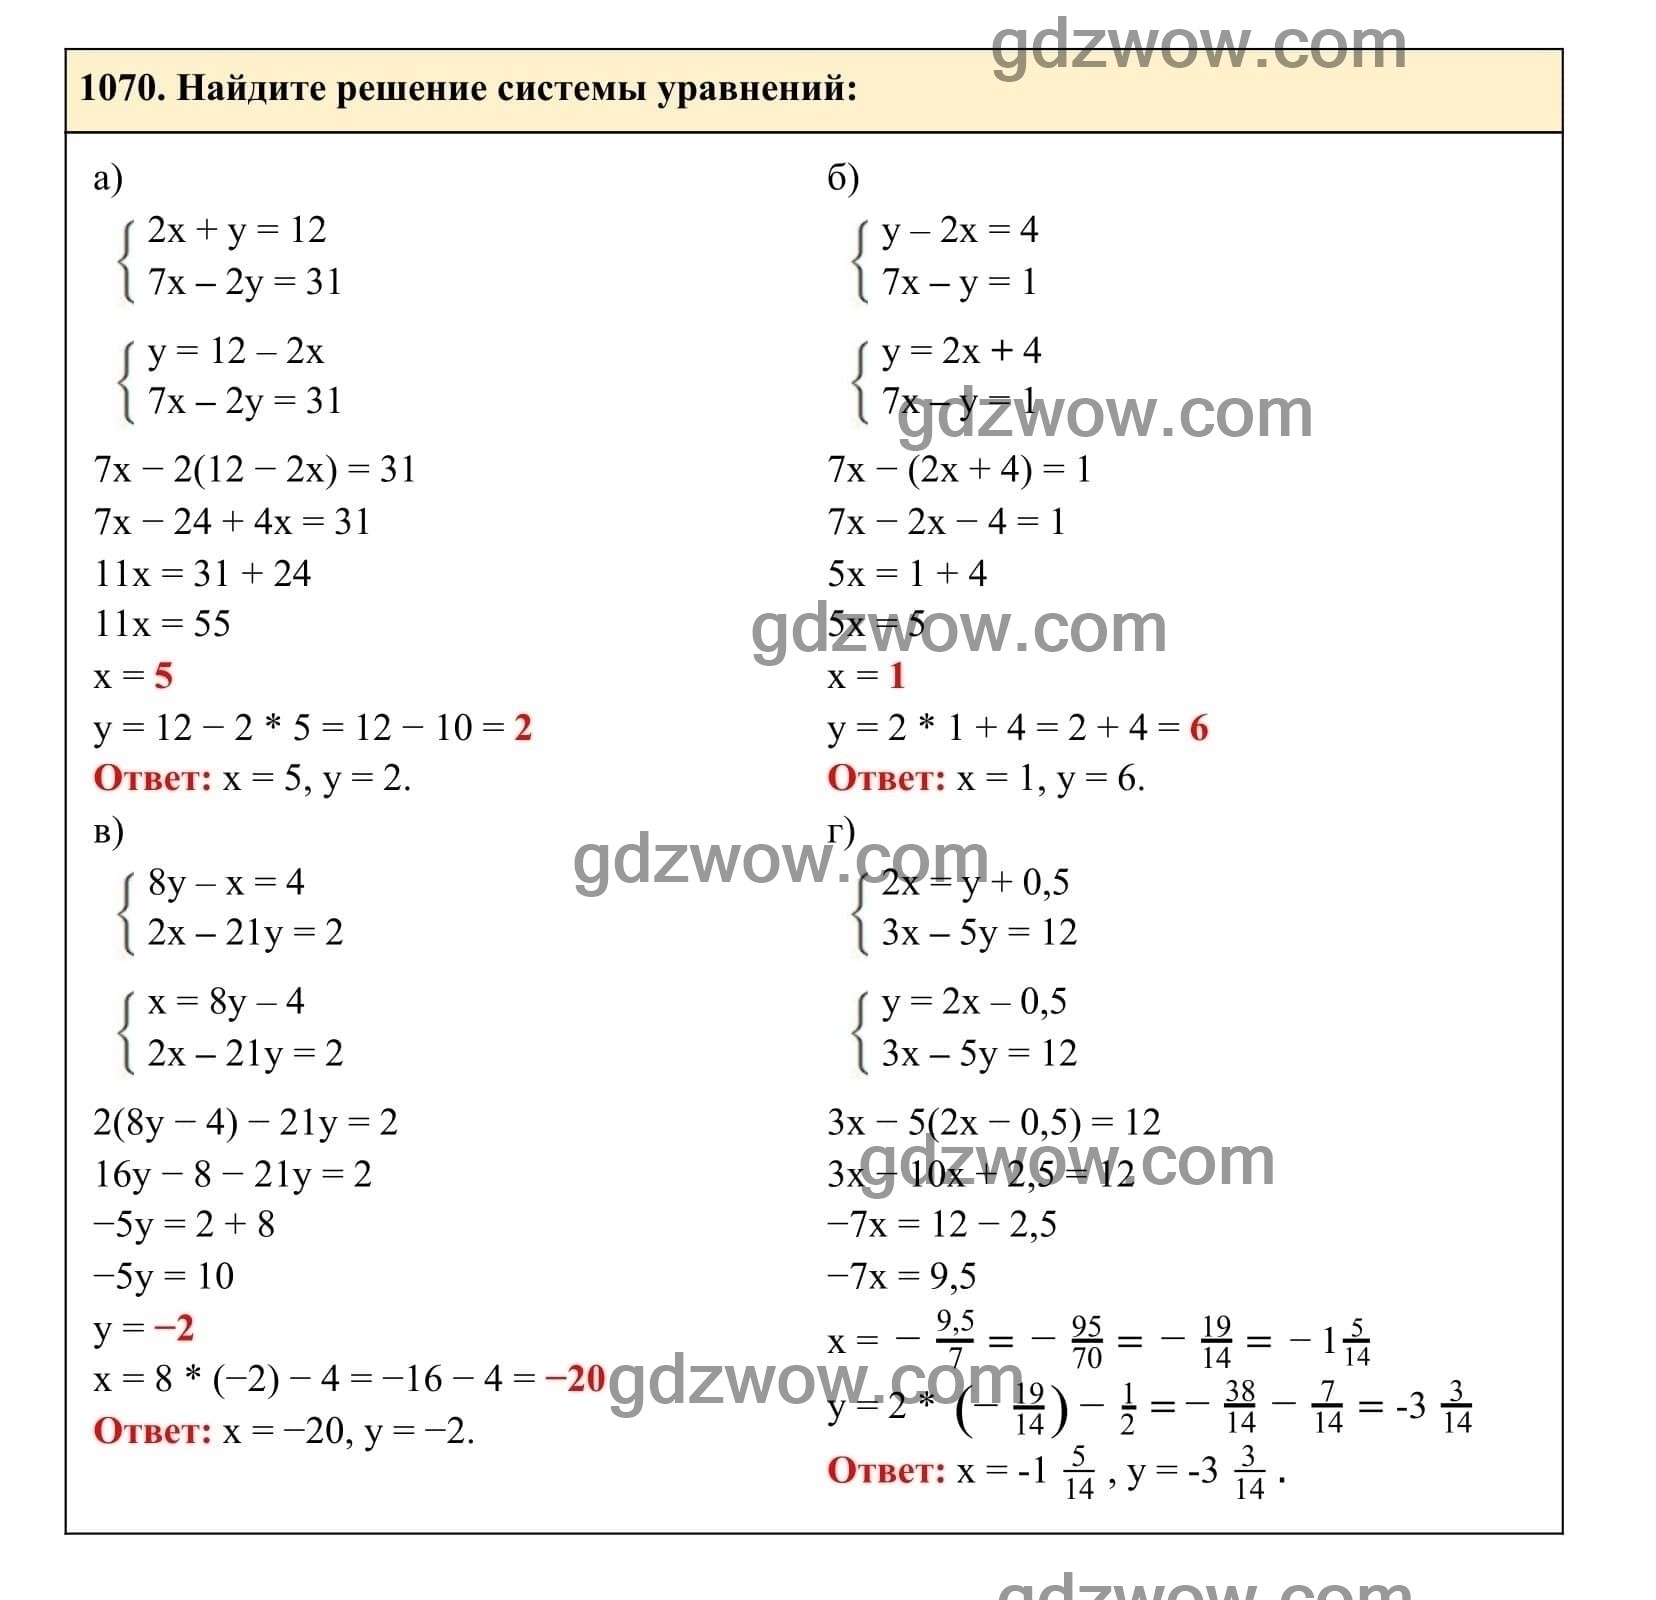 Упражнение 1070 - ГДЗ по Алгебре 7 класс Учебник Макарычев (решебник) - GDZwow